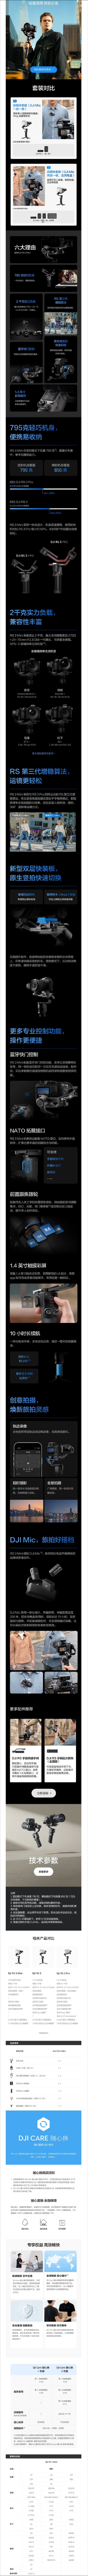 【大疆DJI RS 3 Mini】大疆 DJI RS 3 Mini 如影微单稳定器手持云台 单反相机.png